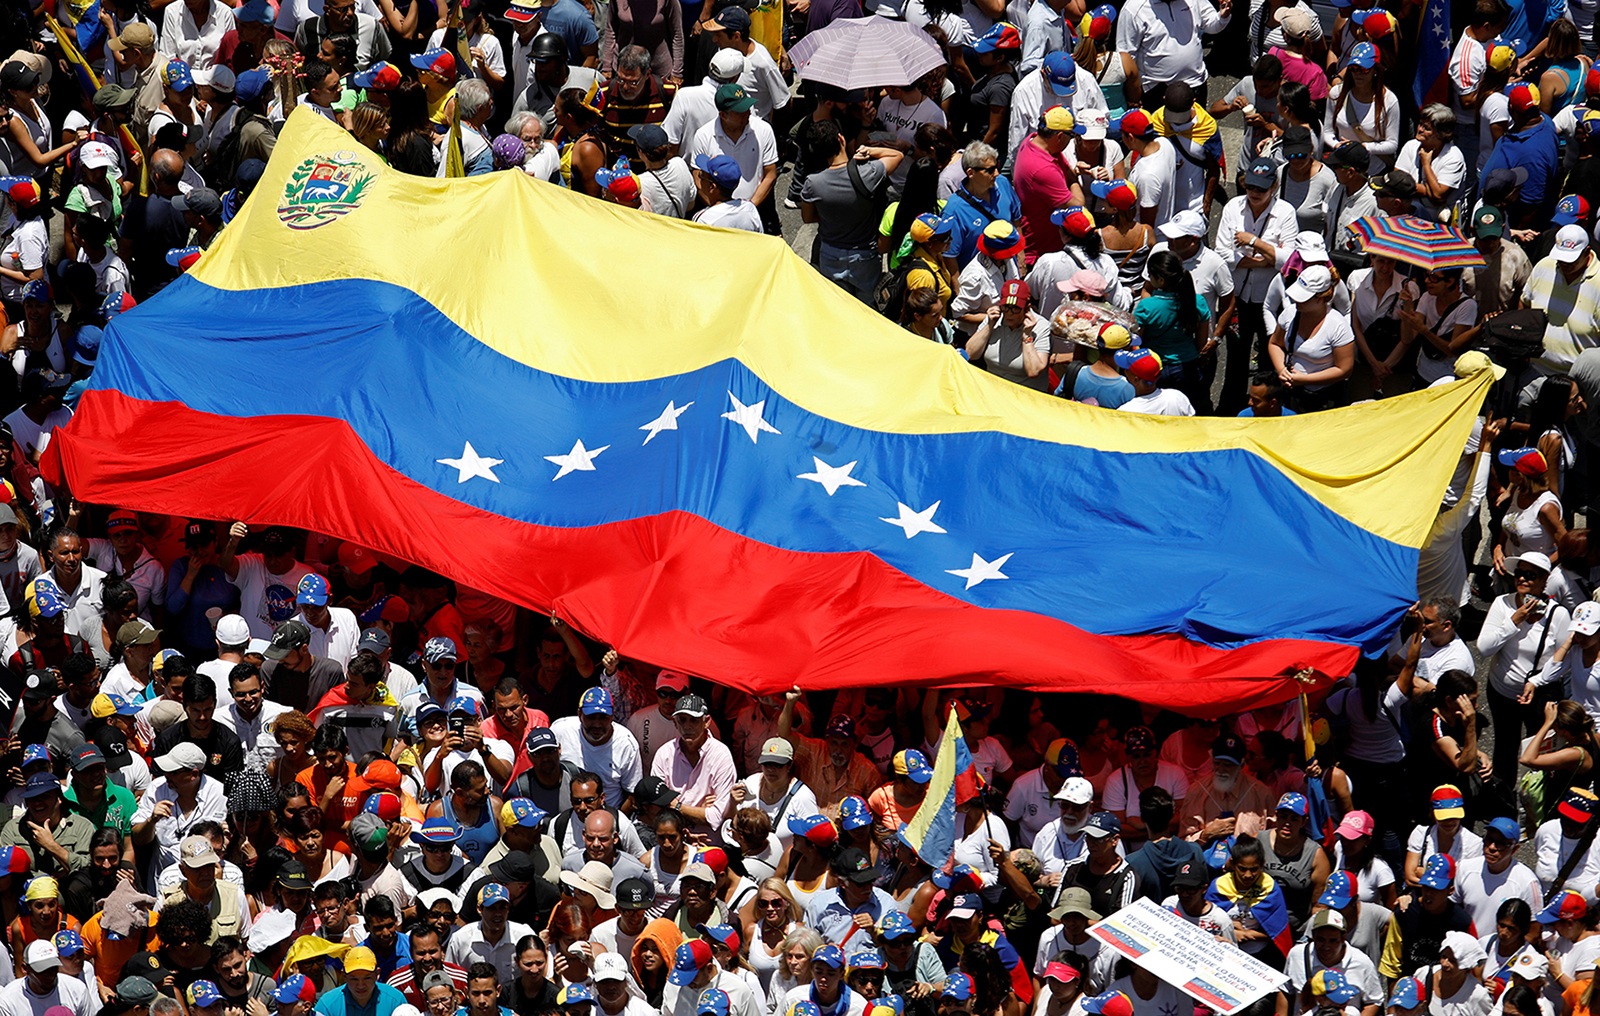 Il salario minimo del Venezuela è aumentato di 18 volte, legato alla criptovaluta Petro - Venezuela